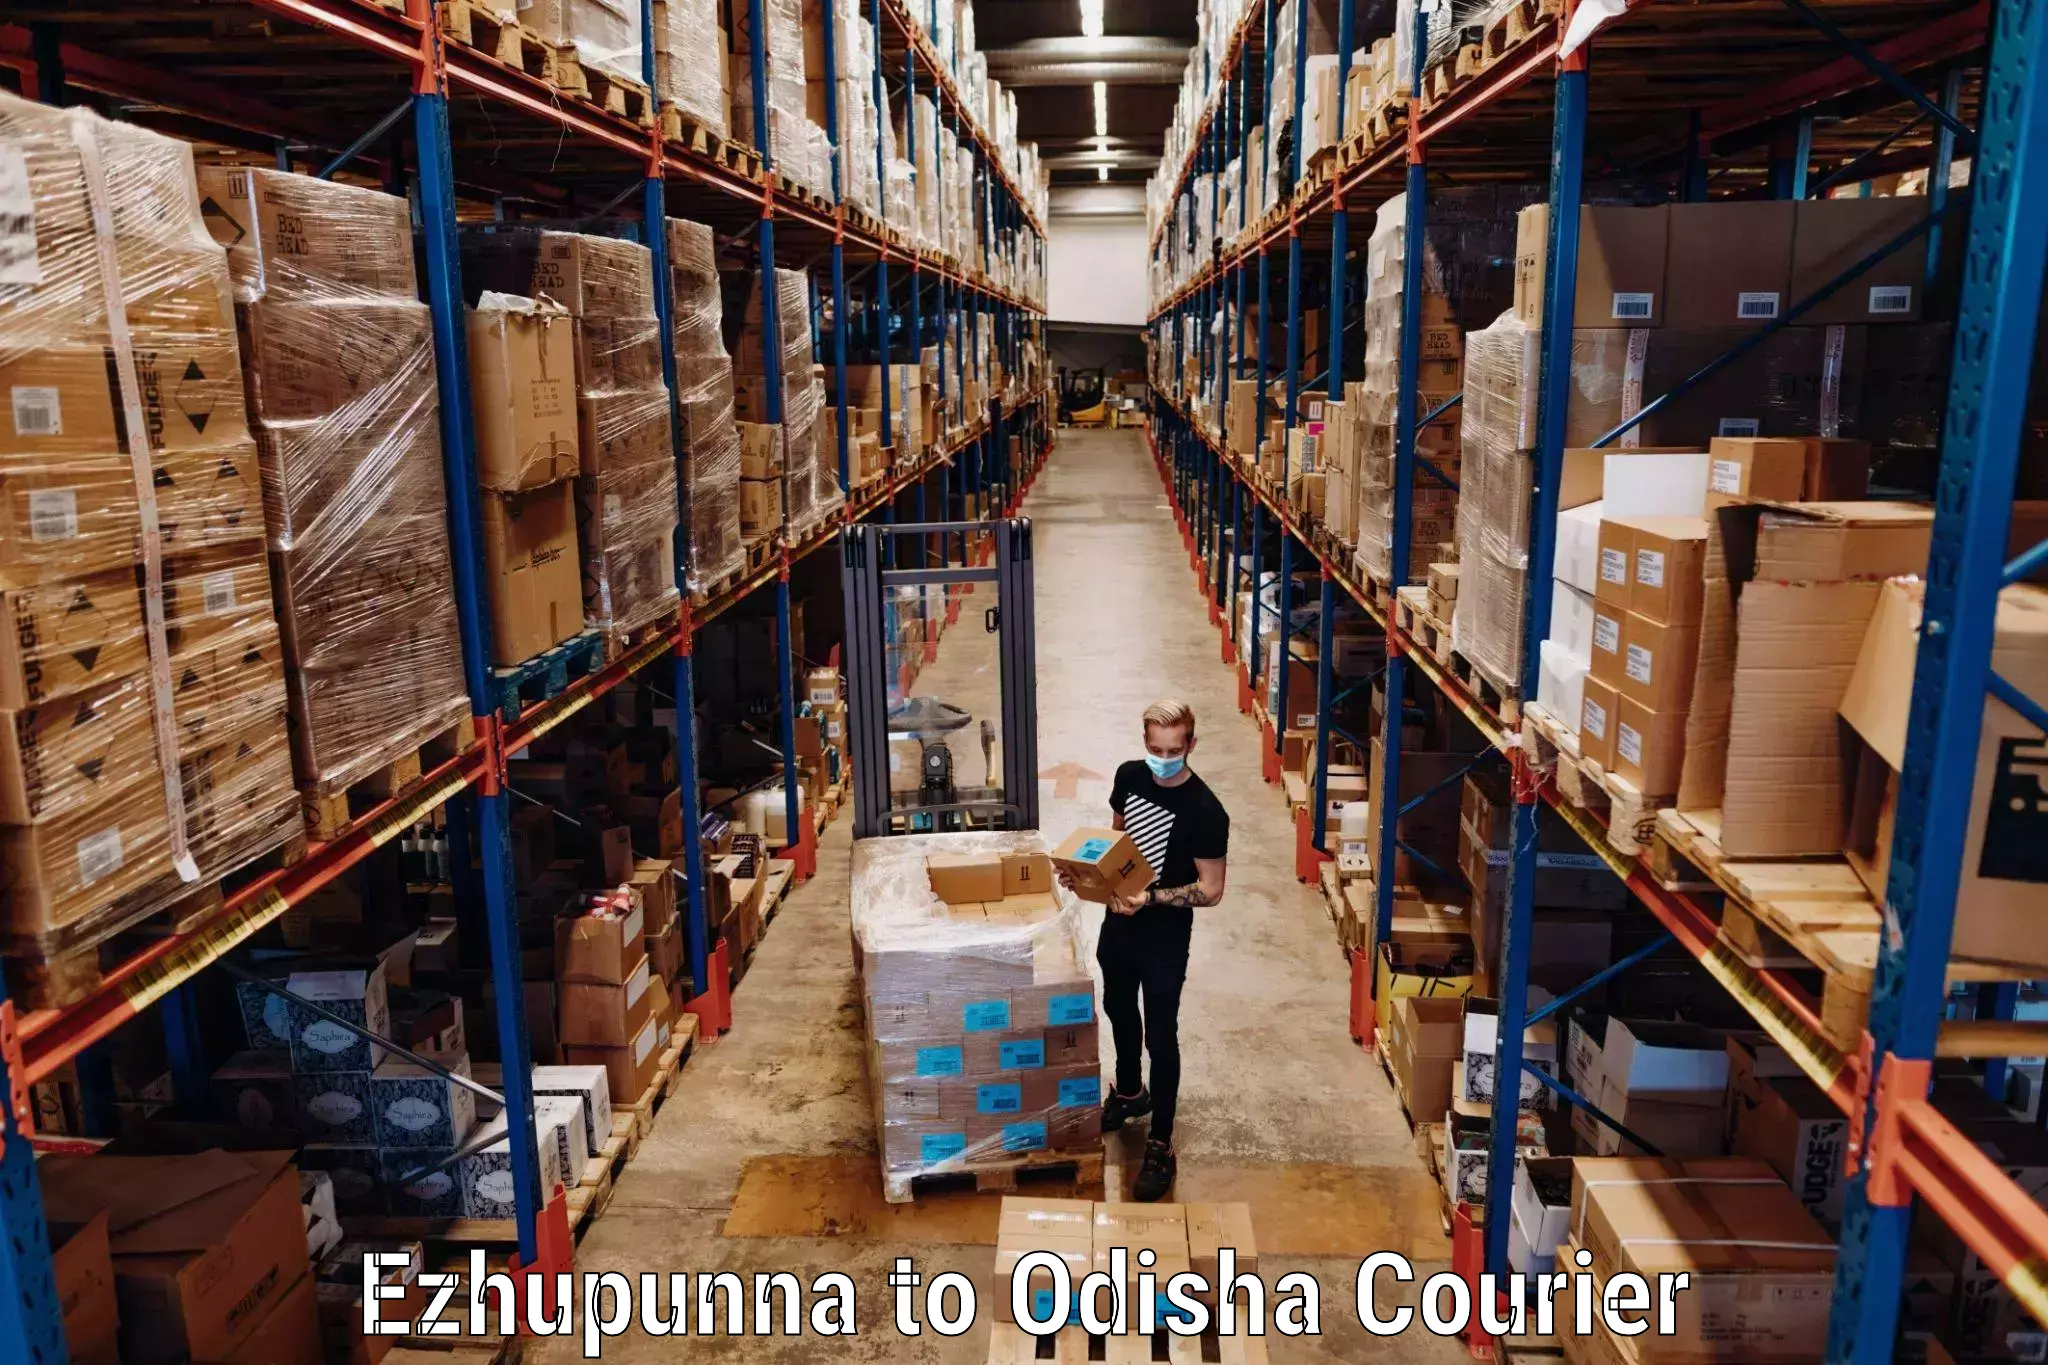 Luggage shipment specialists Ezhupunna to Kalimela